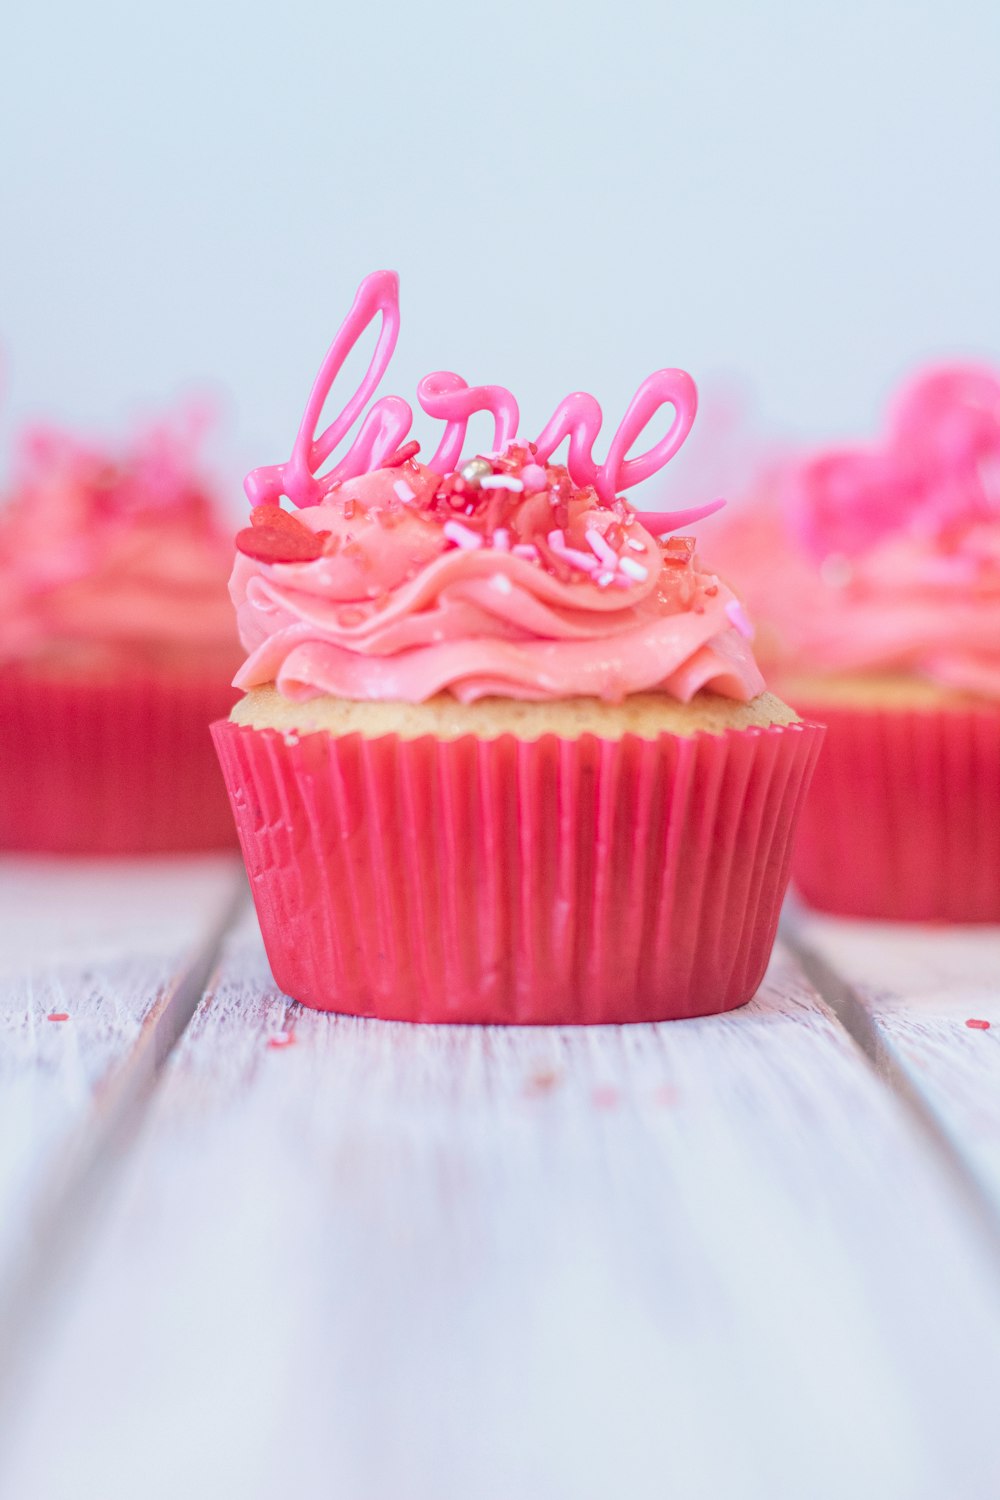 Cupcake rosa con glassa rosa in cima